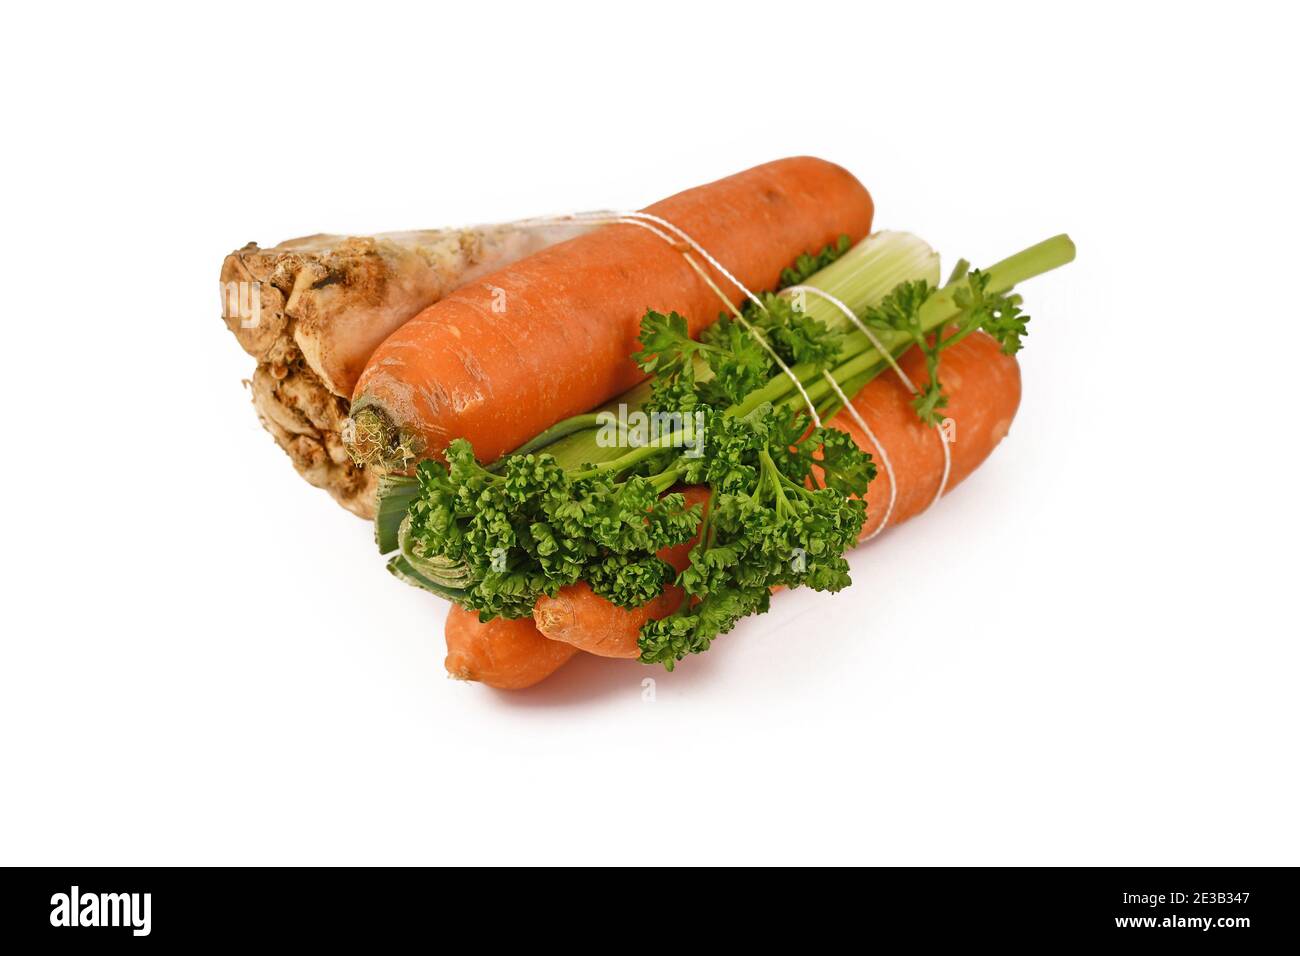 Un fascio di zuppe di verdure contenenti carote, porri, prezzemolo e radice di sedano isolati su sfondo bianco. Tradizionalmente venduto ai supermercati tedeschi Foto Stock